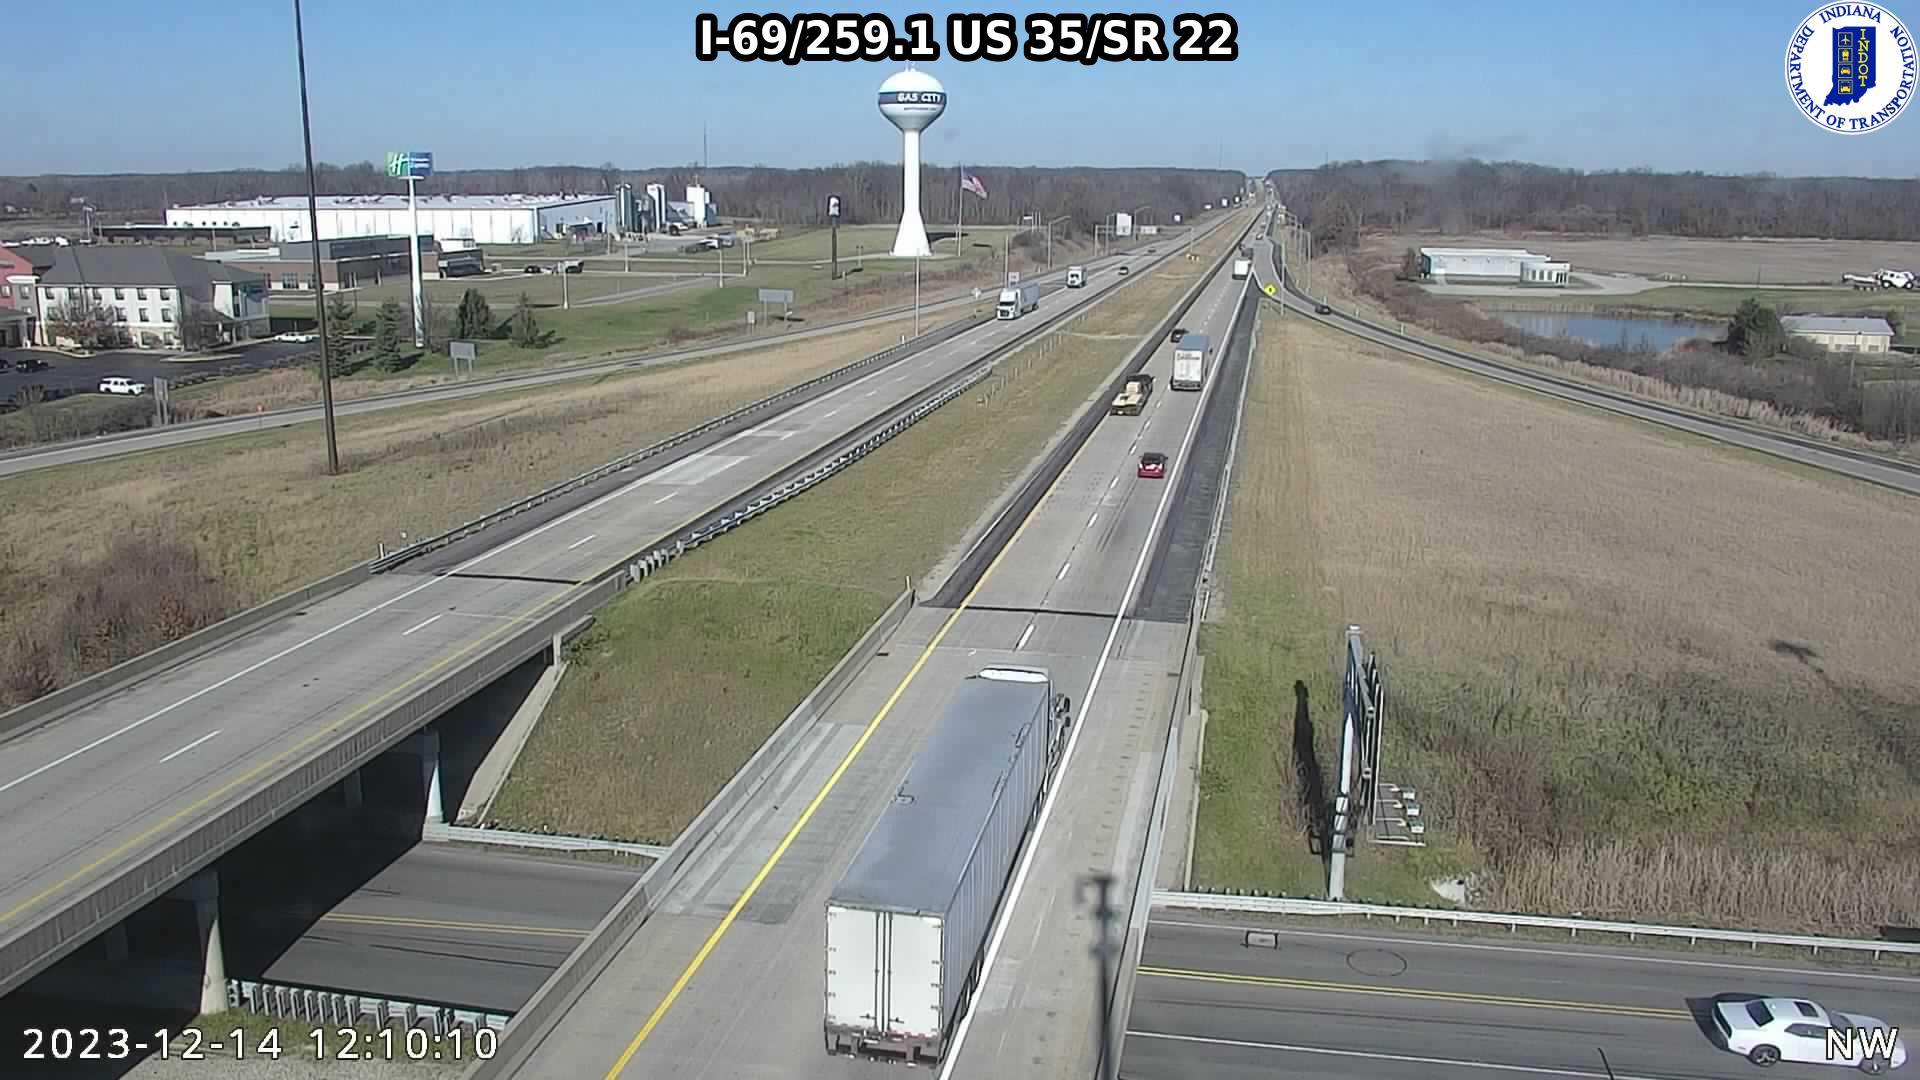 Upland: I-69: I-69/259.1 US 35/SR Traffic Camera